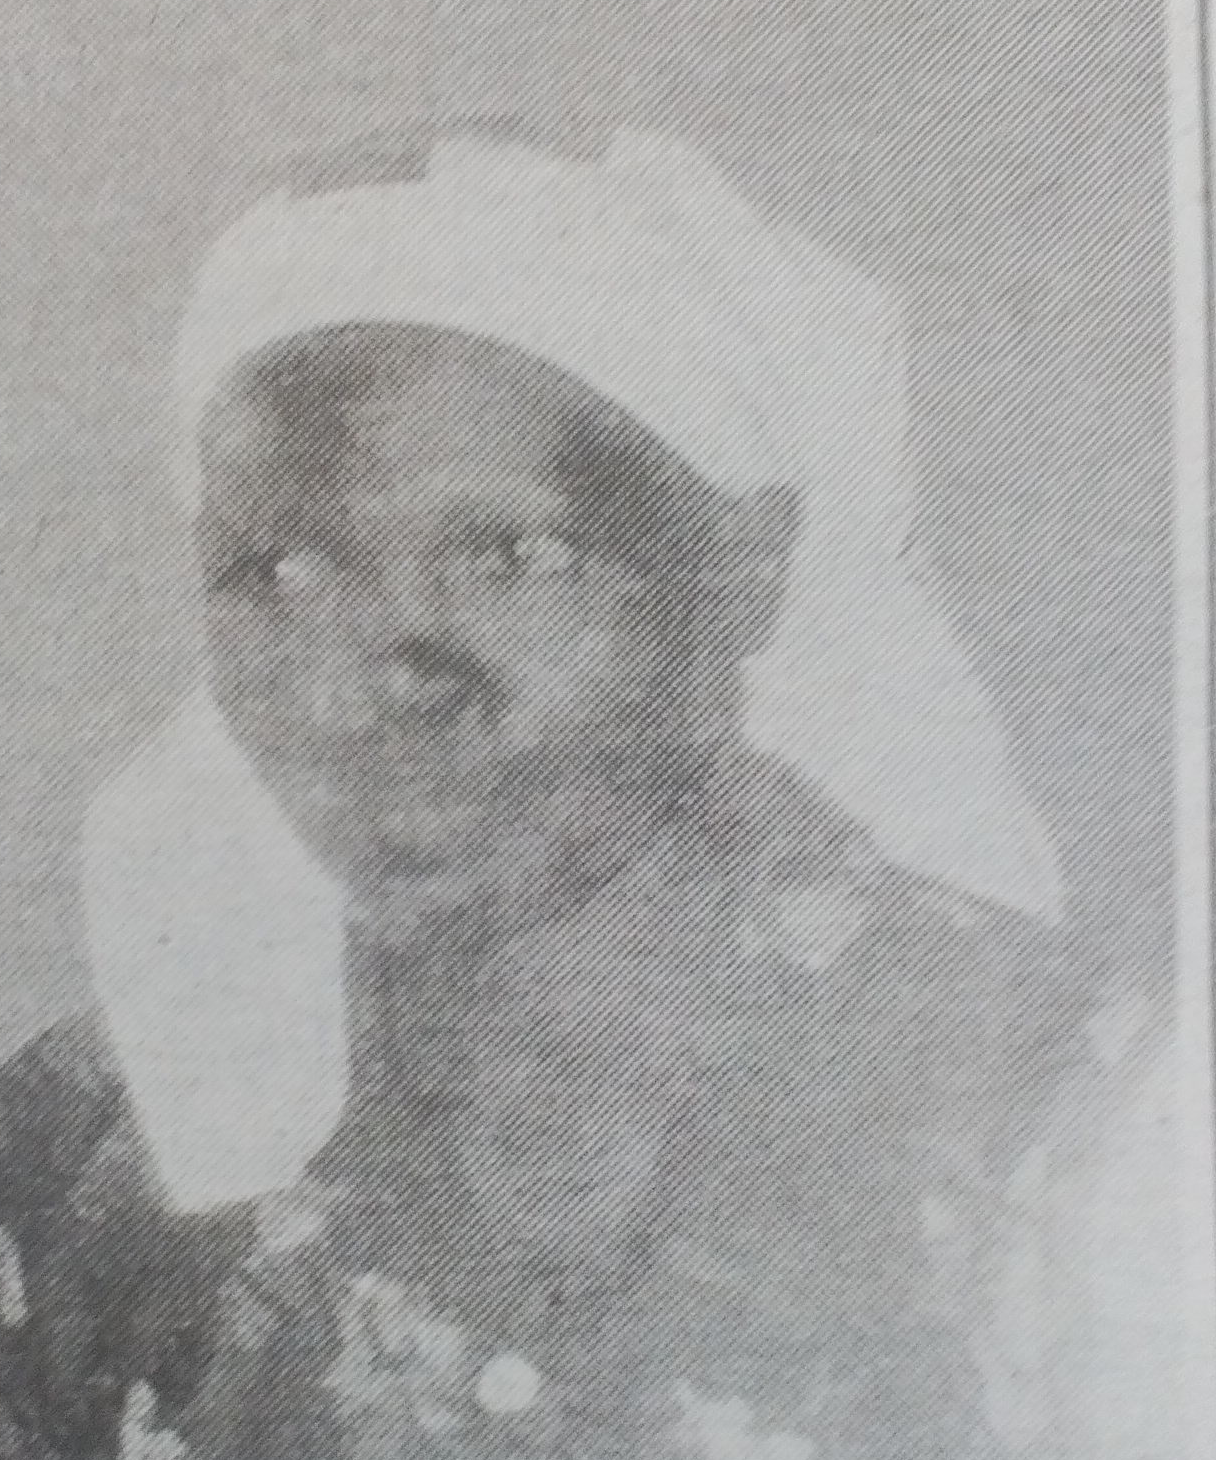 Obituary Image of Joyce Bwoga Adero